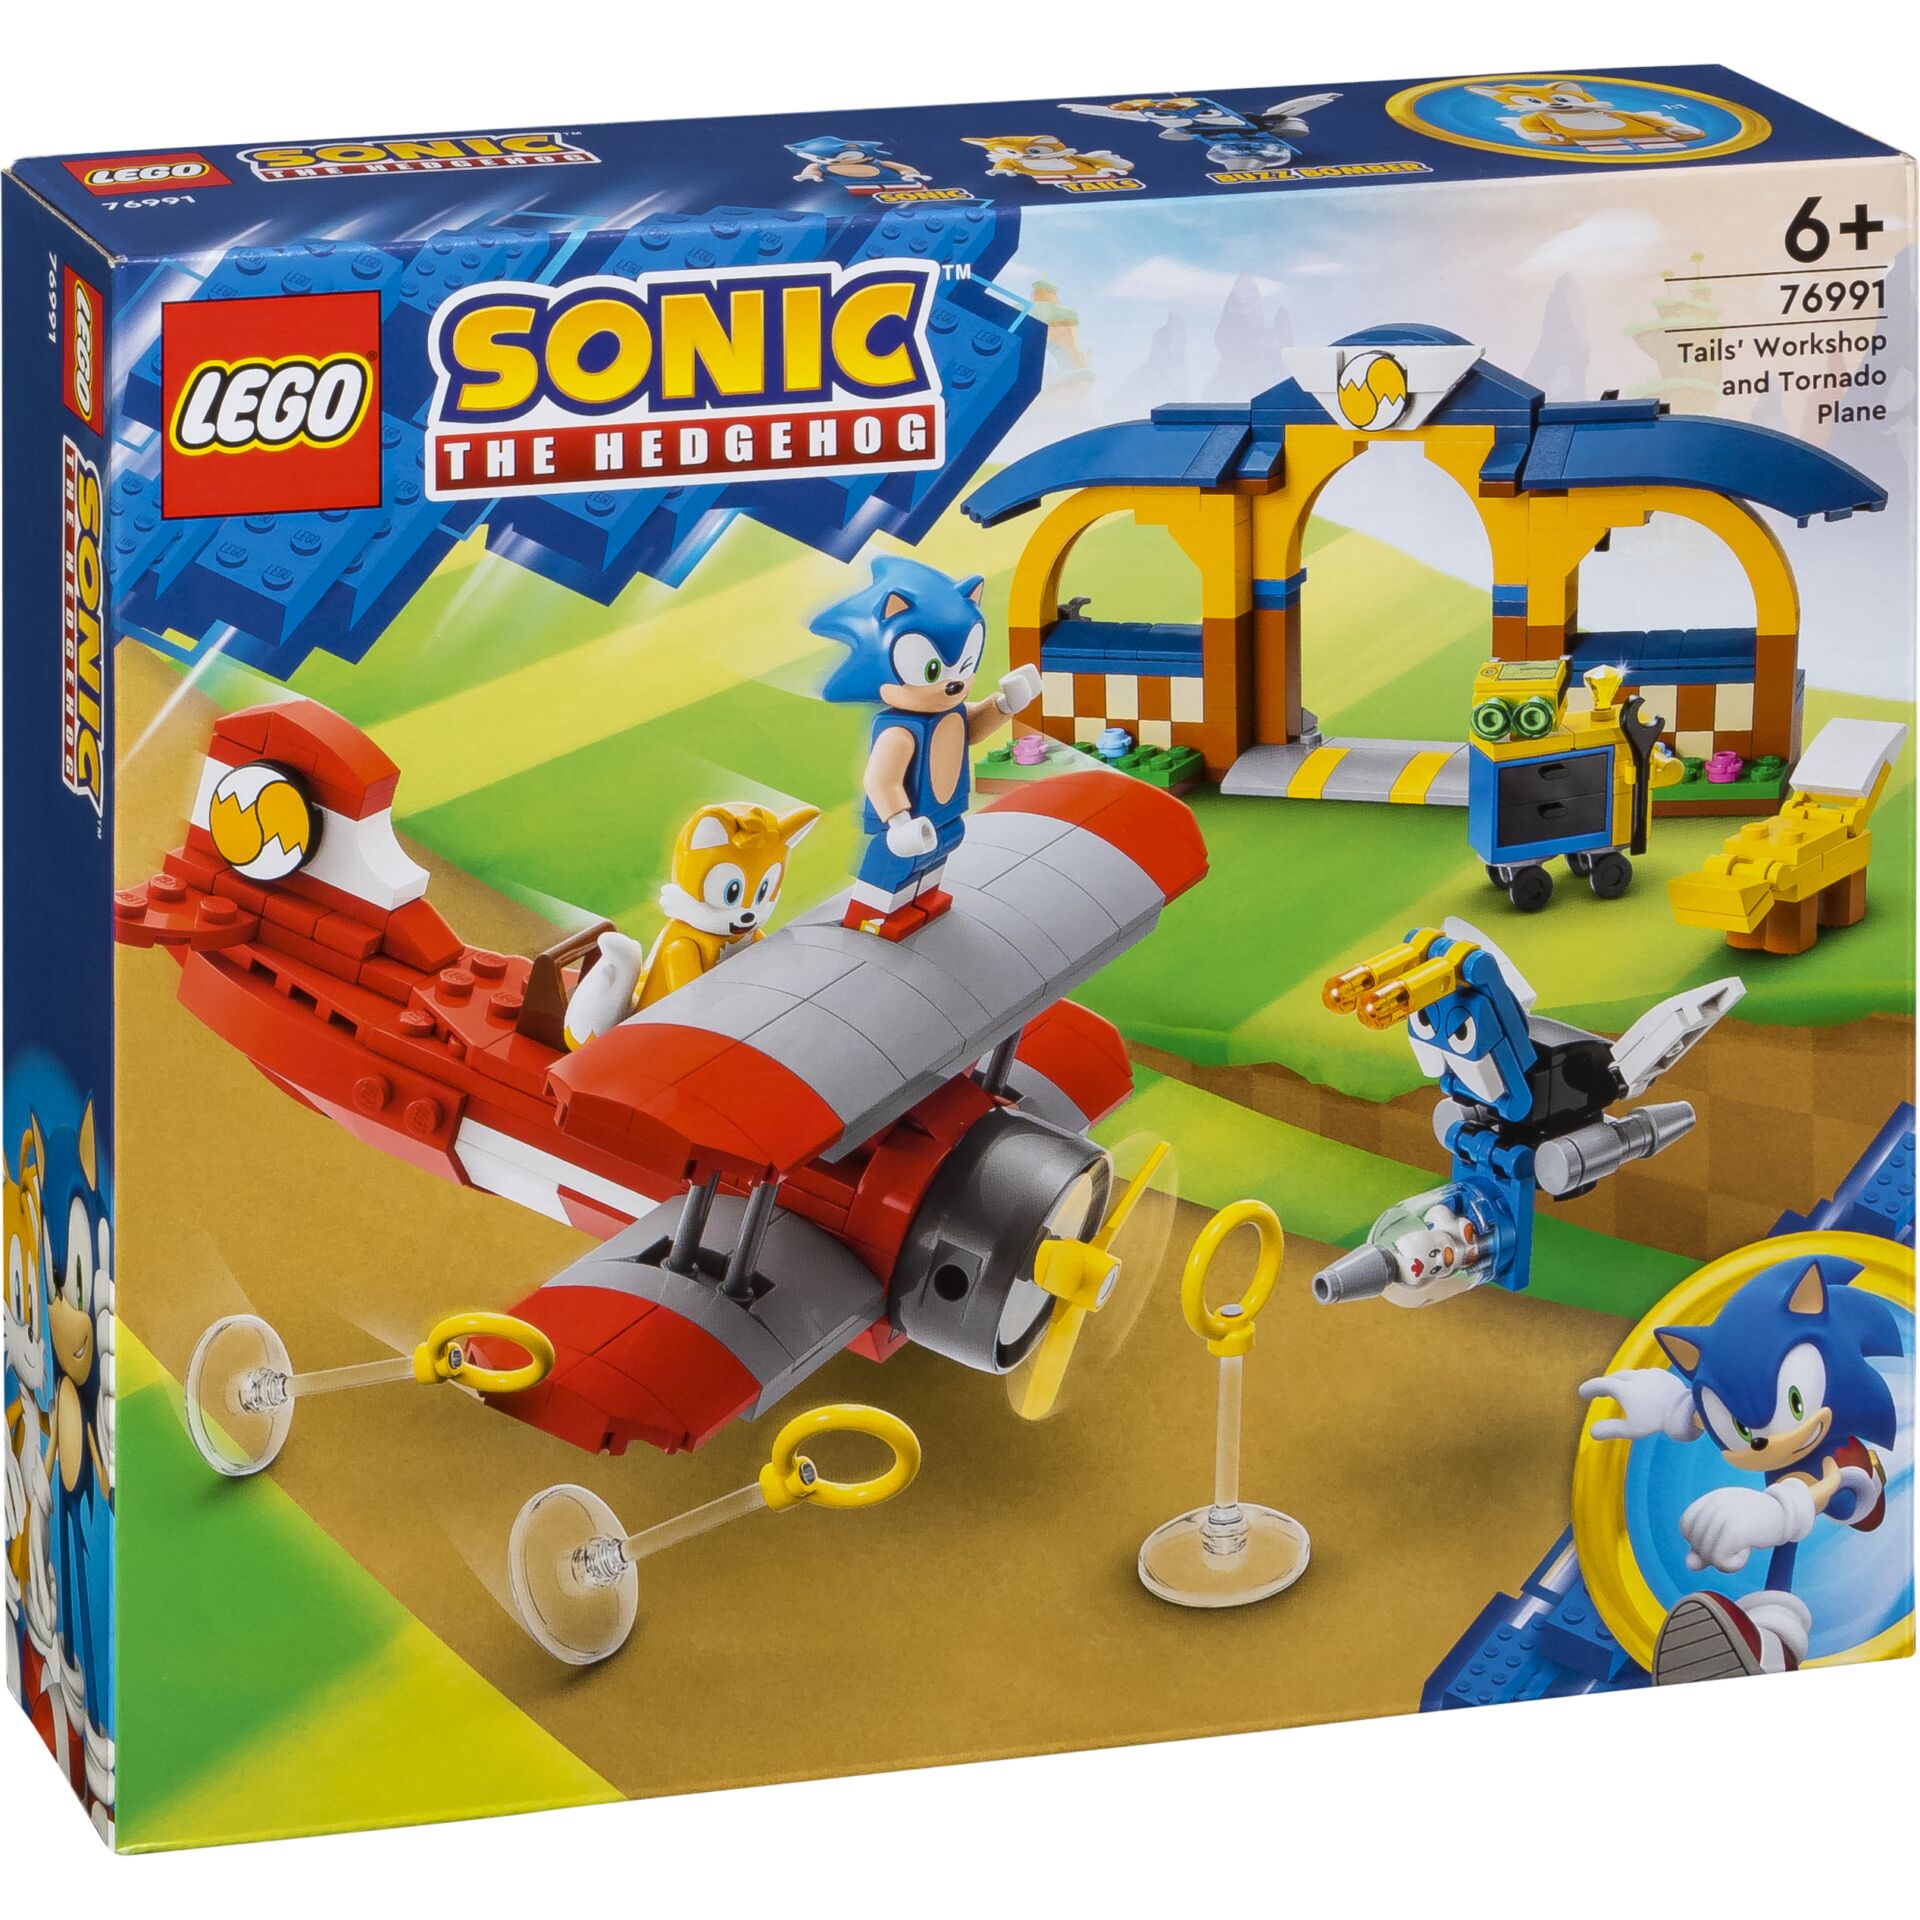 LEGO Sonic the Hedgehog - Tails Tornadoflieger mit Werkstatt